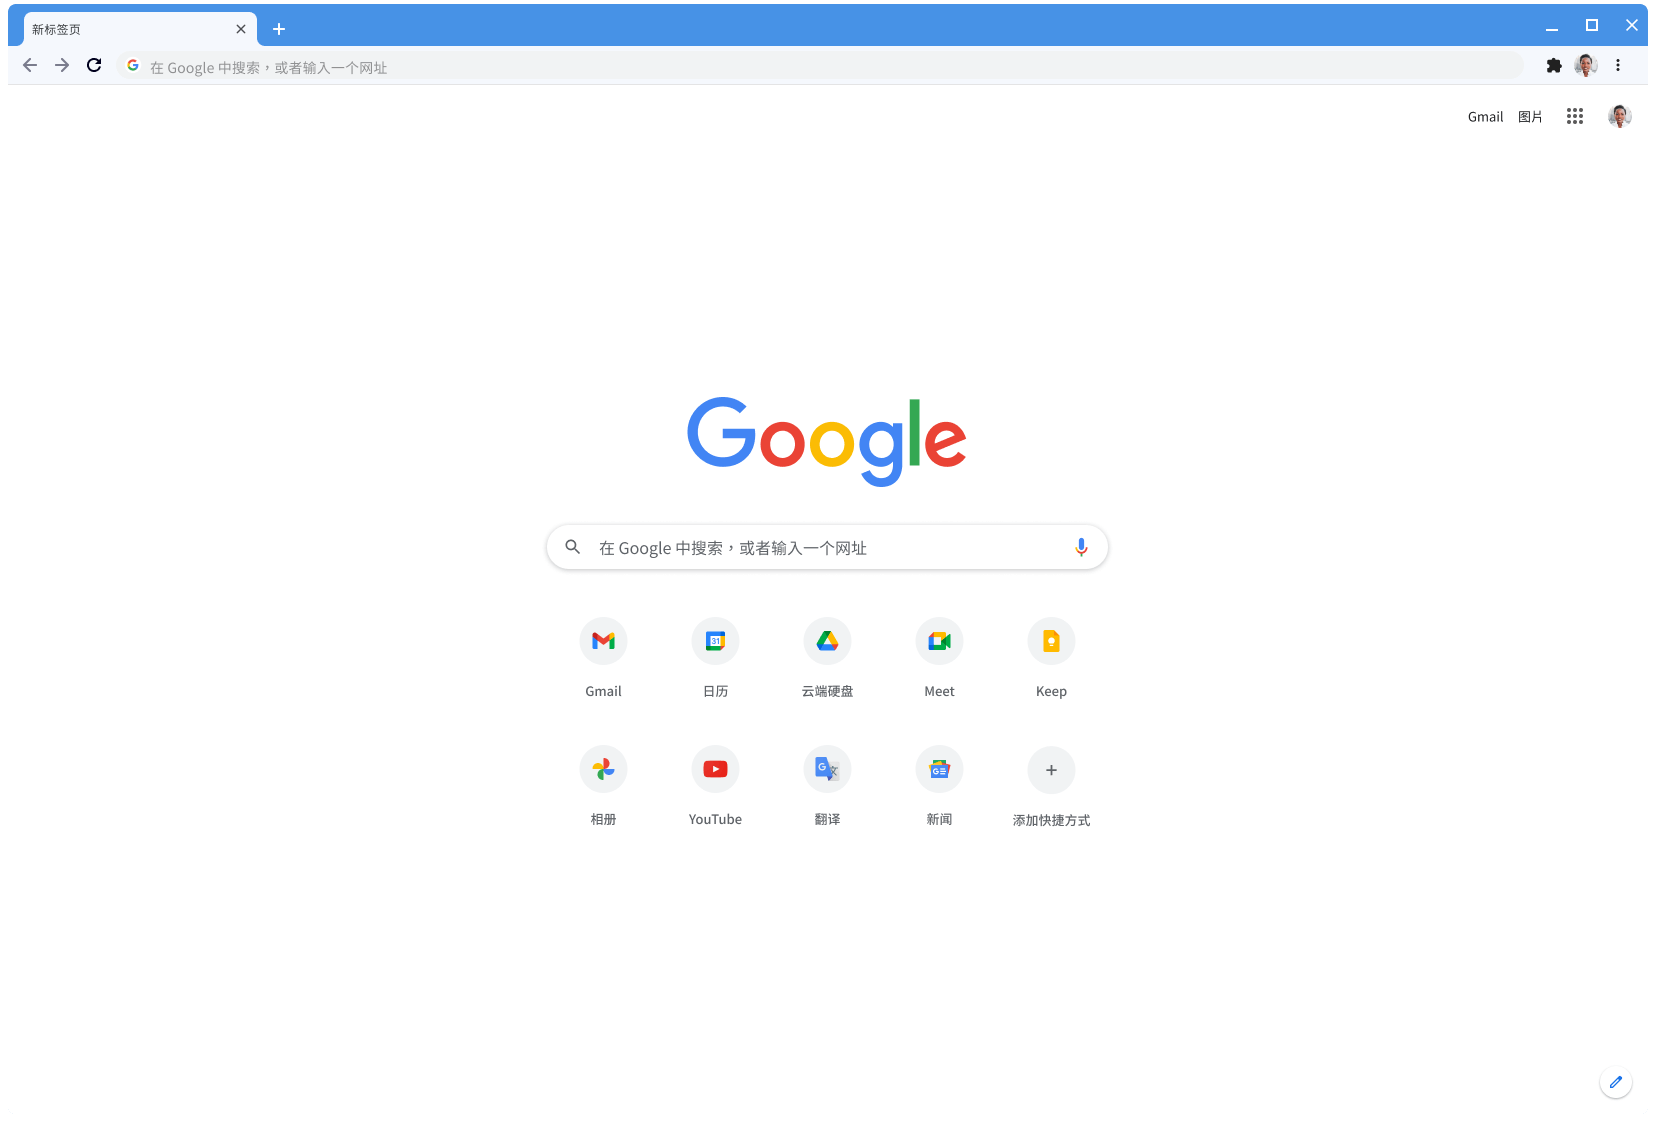 使用经典主题显示 Google.com 页面的 Chrome 浏览器窗口。